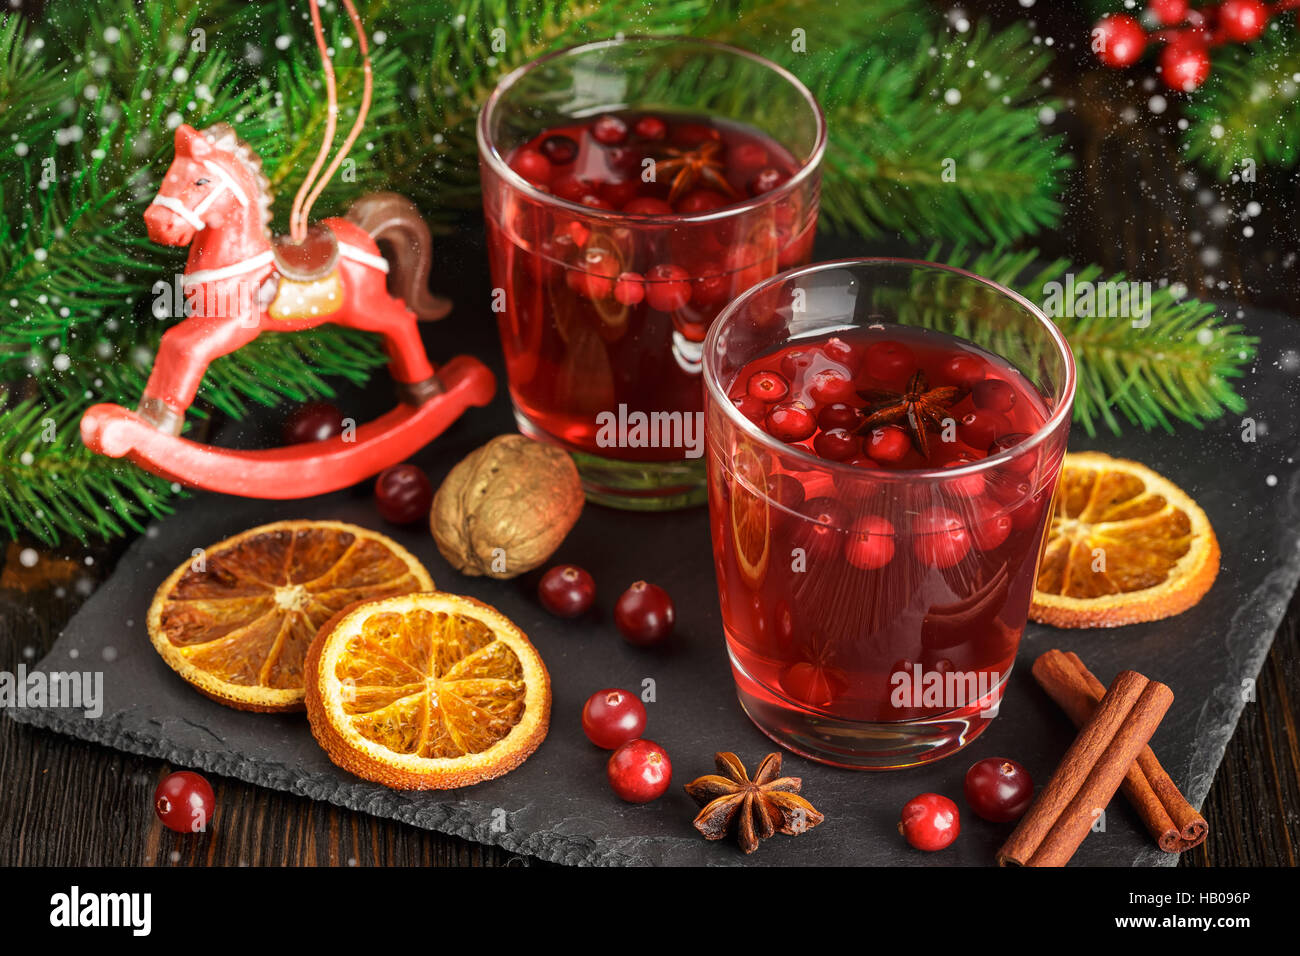 Weihnachten-Cranberry cocktail mit Zimtstangen, Anis Sterne, trockenen Orangenscheiben und Tannenzweigen auf einem schwarzen Stein verziert Stockfoto